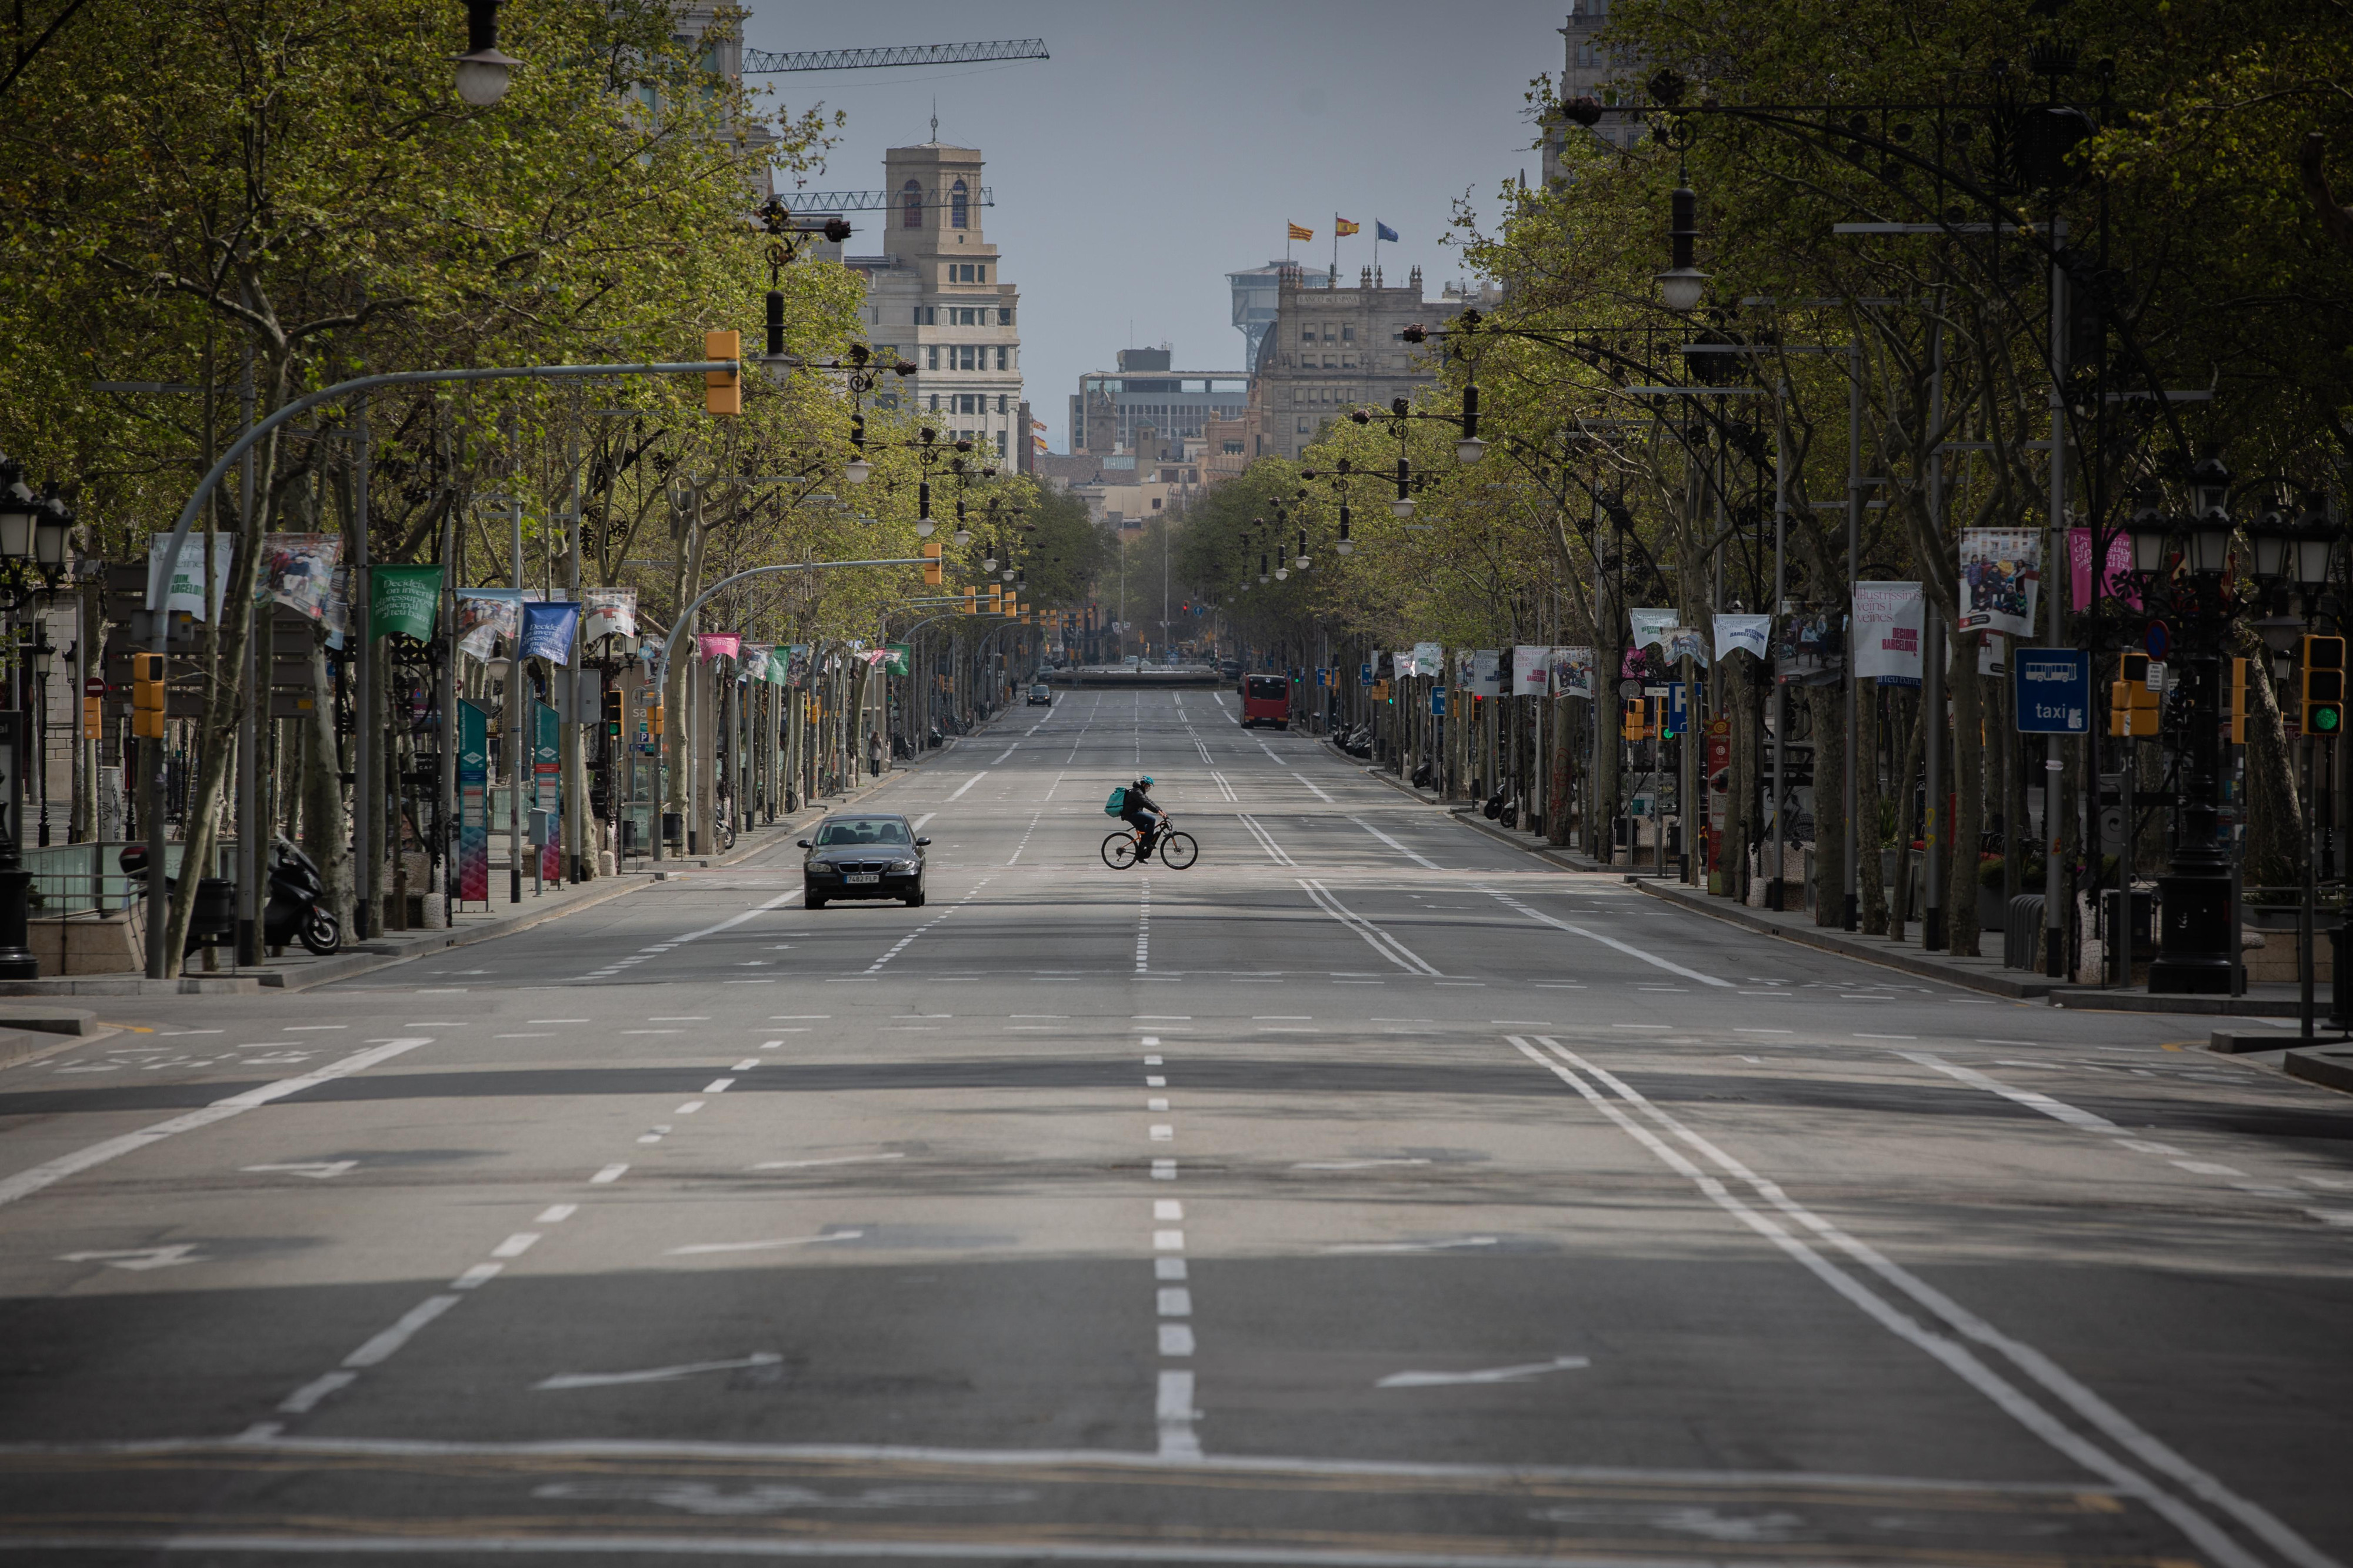 El Paseo de Gracia de Barcelona, sin taxis y casi vacío en la segunda semana del estado de alarma por el coronavirus / EUROPA PRESS